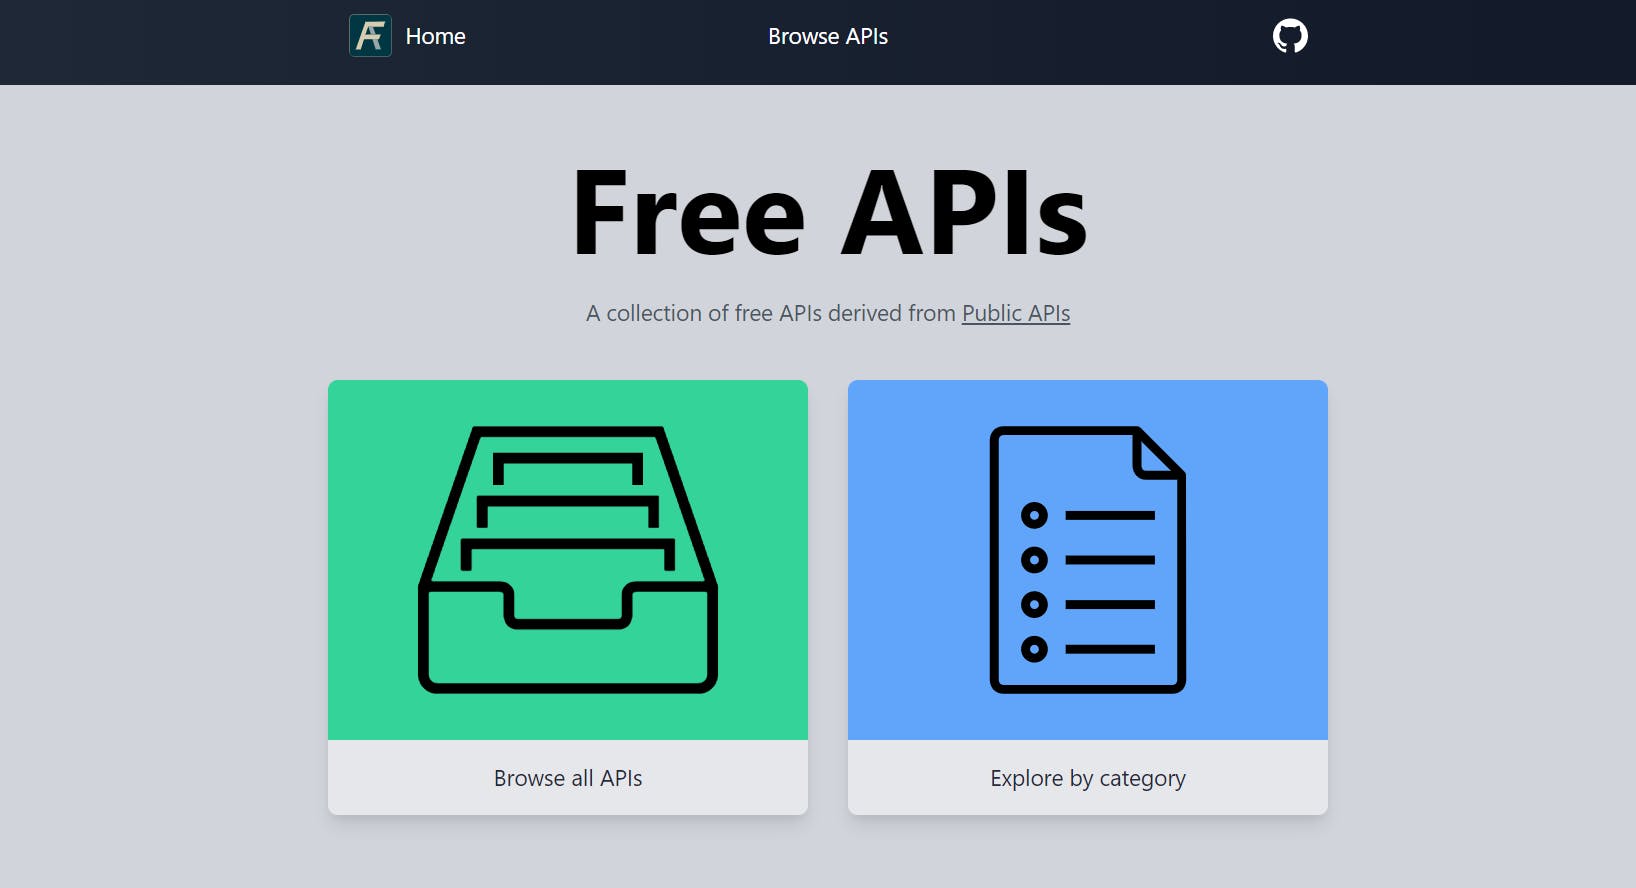 Free APIs